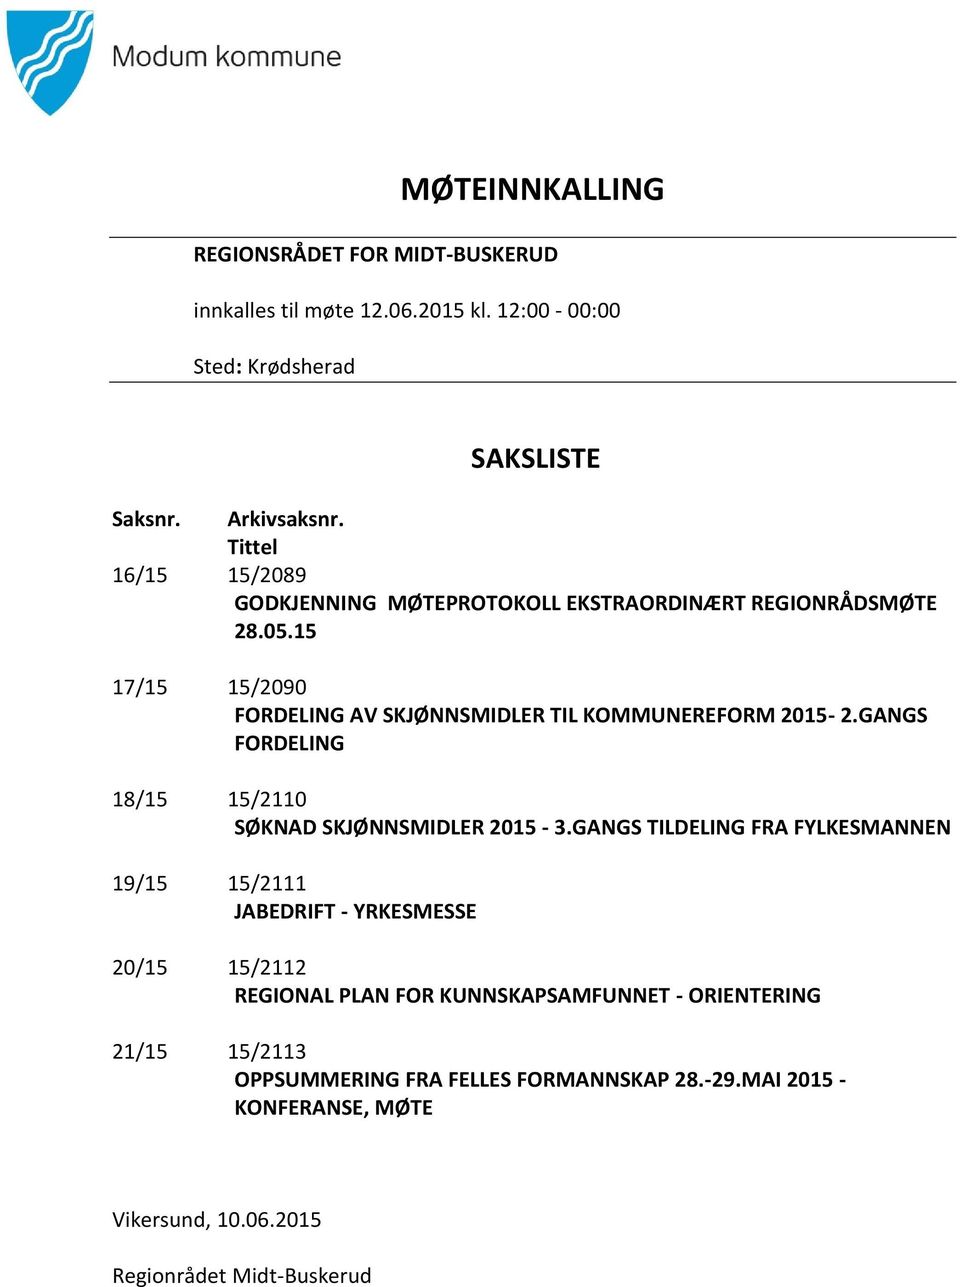 GANGS FORDELING 18/15 15/2110 SØKNAD SKJØNNSMIDLER 2015-3.